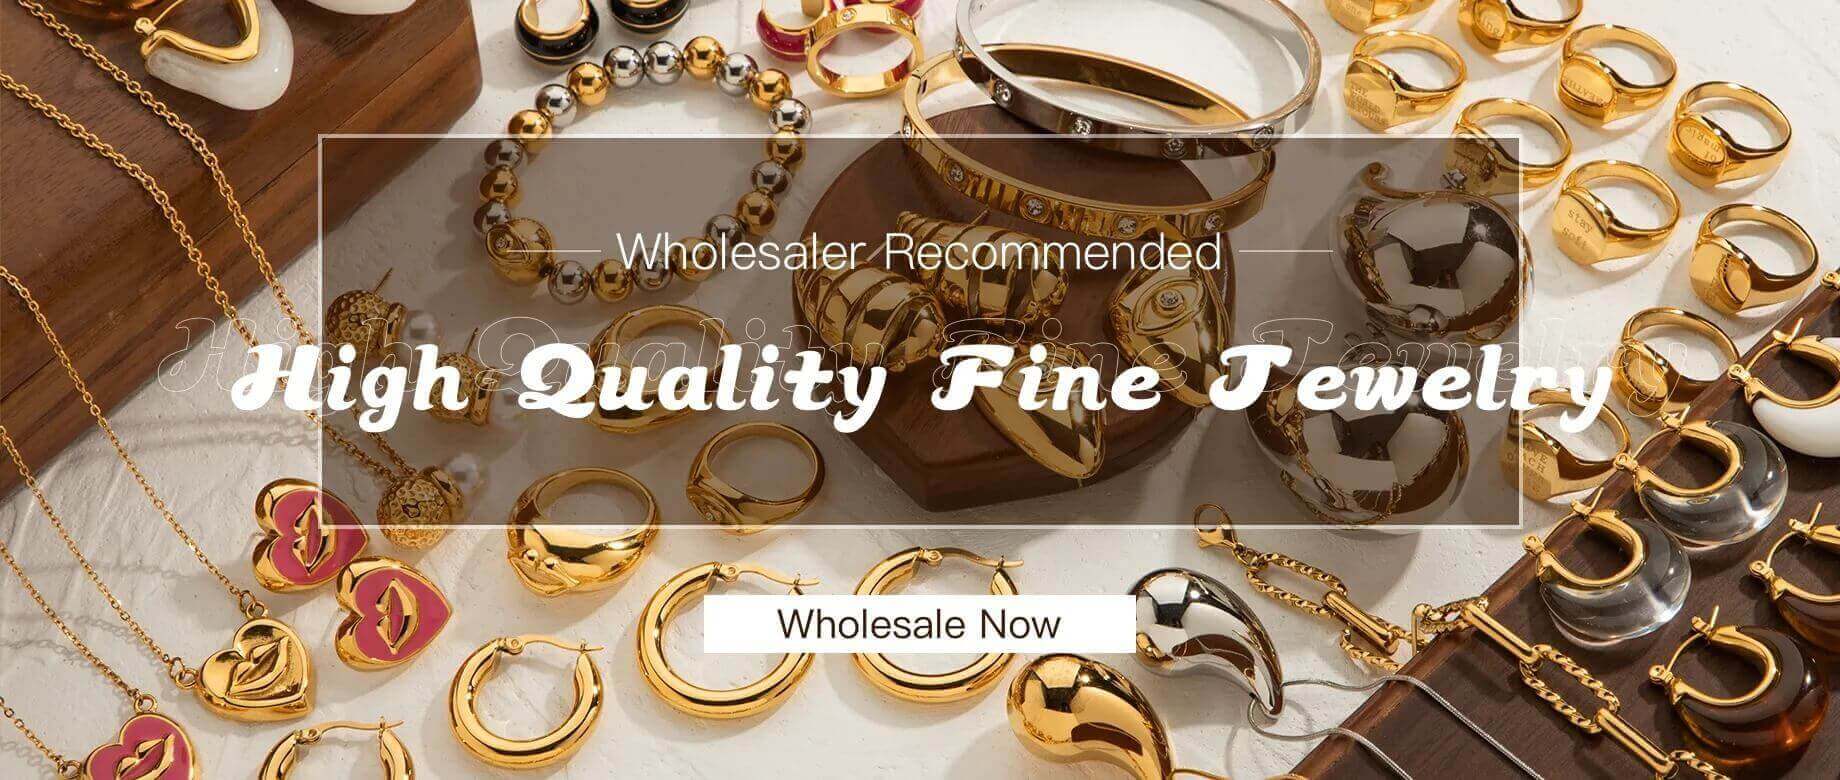 high quality fine jewelry